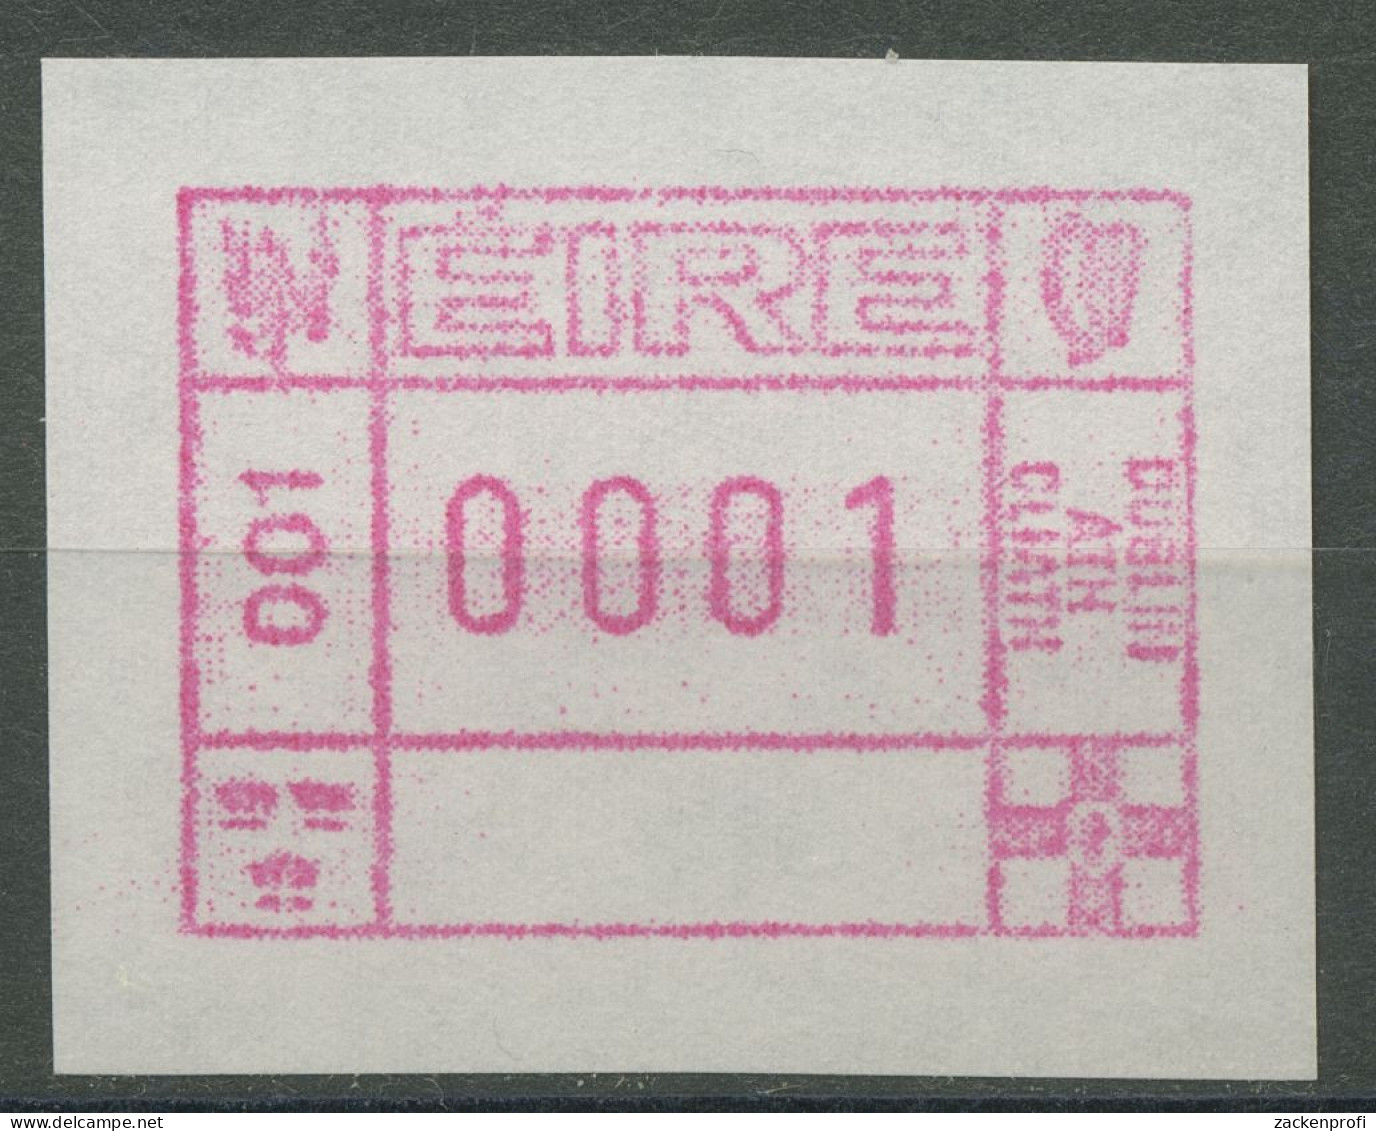 Irland Automatenmarken 1990 Freimarke Einzelwert ATM 1 Postfrisch - Vignettes D'affranchissement (Frama)